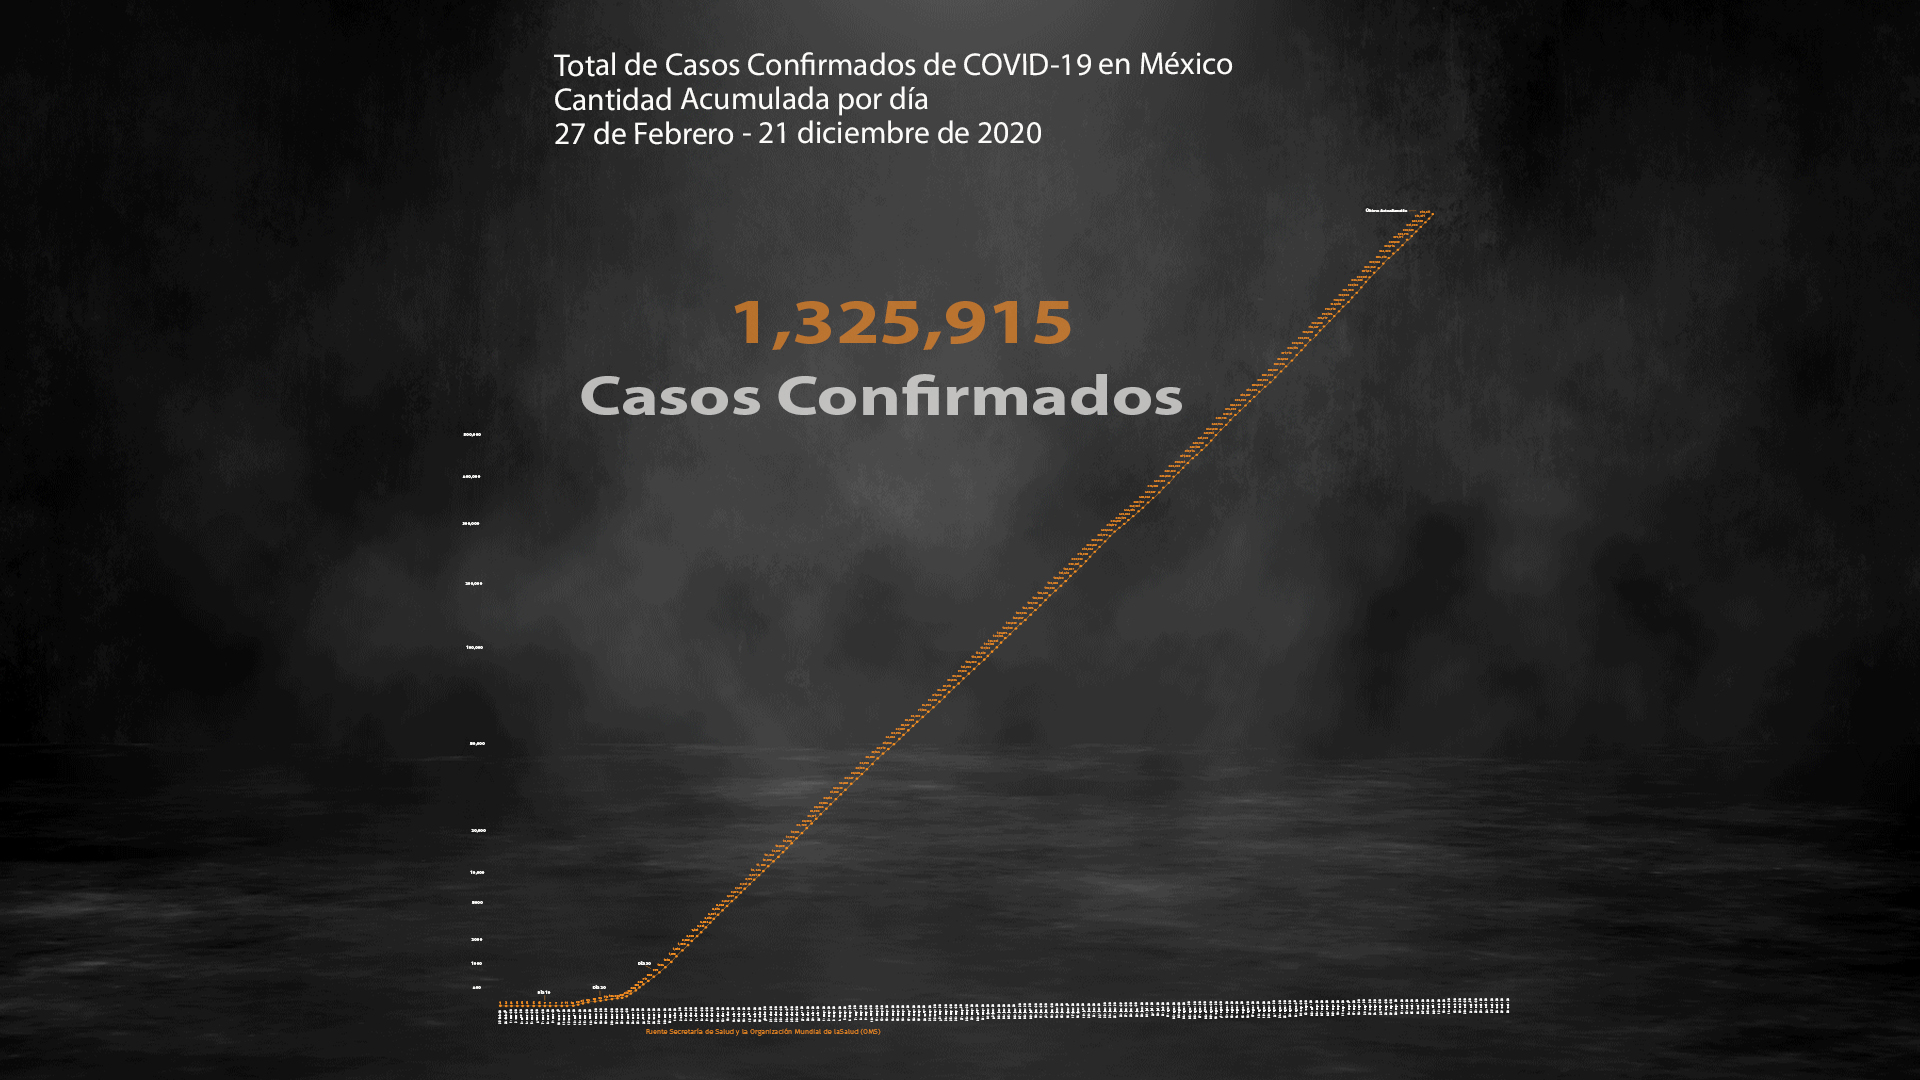 La dependencia dirigida por Jorge Alcocer ha ofrecido 292 conferencias de prensa para informar sobre el avance de la COVID-19 en México (Ilustración: Steve Allen)